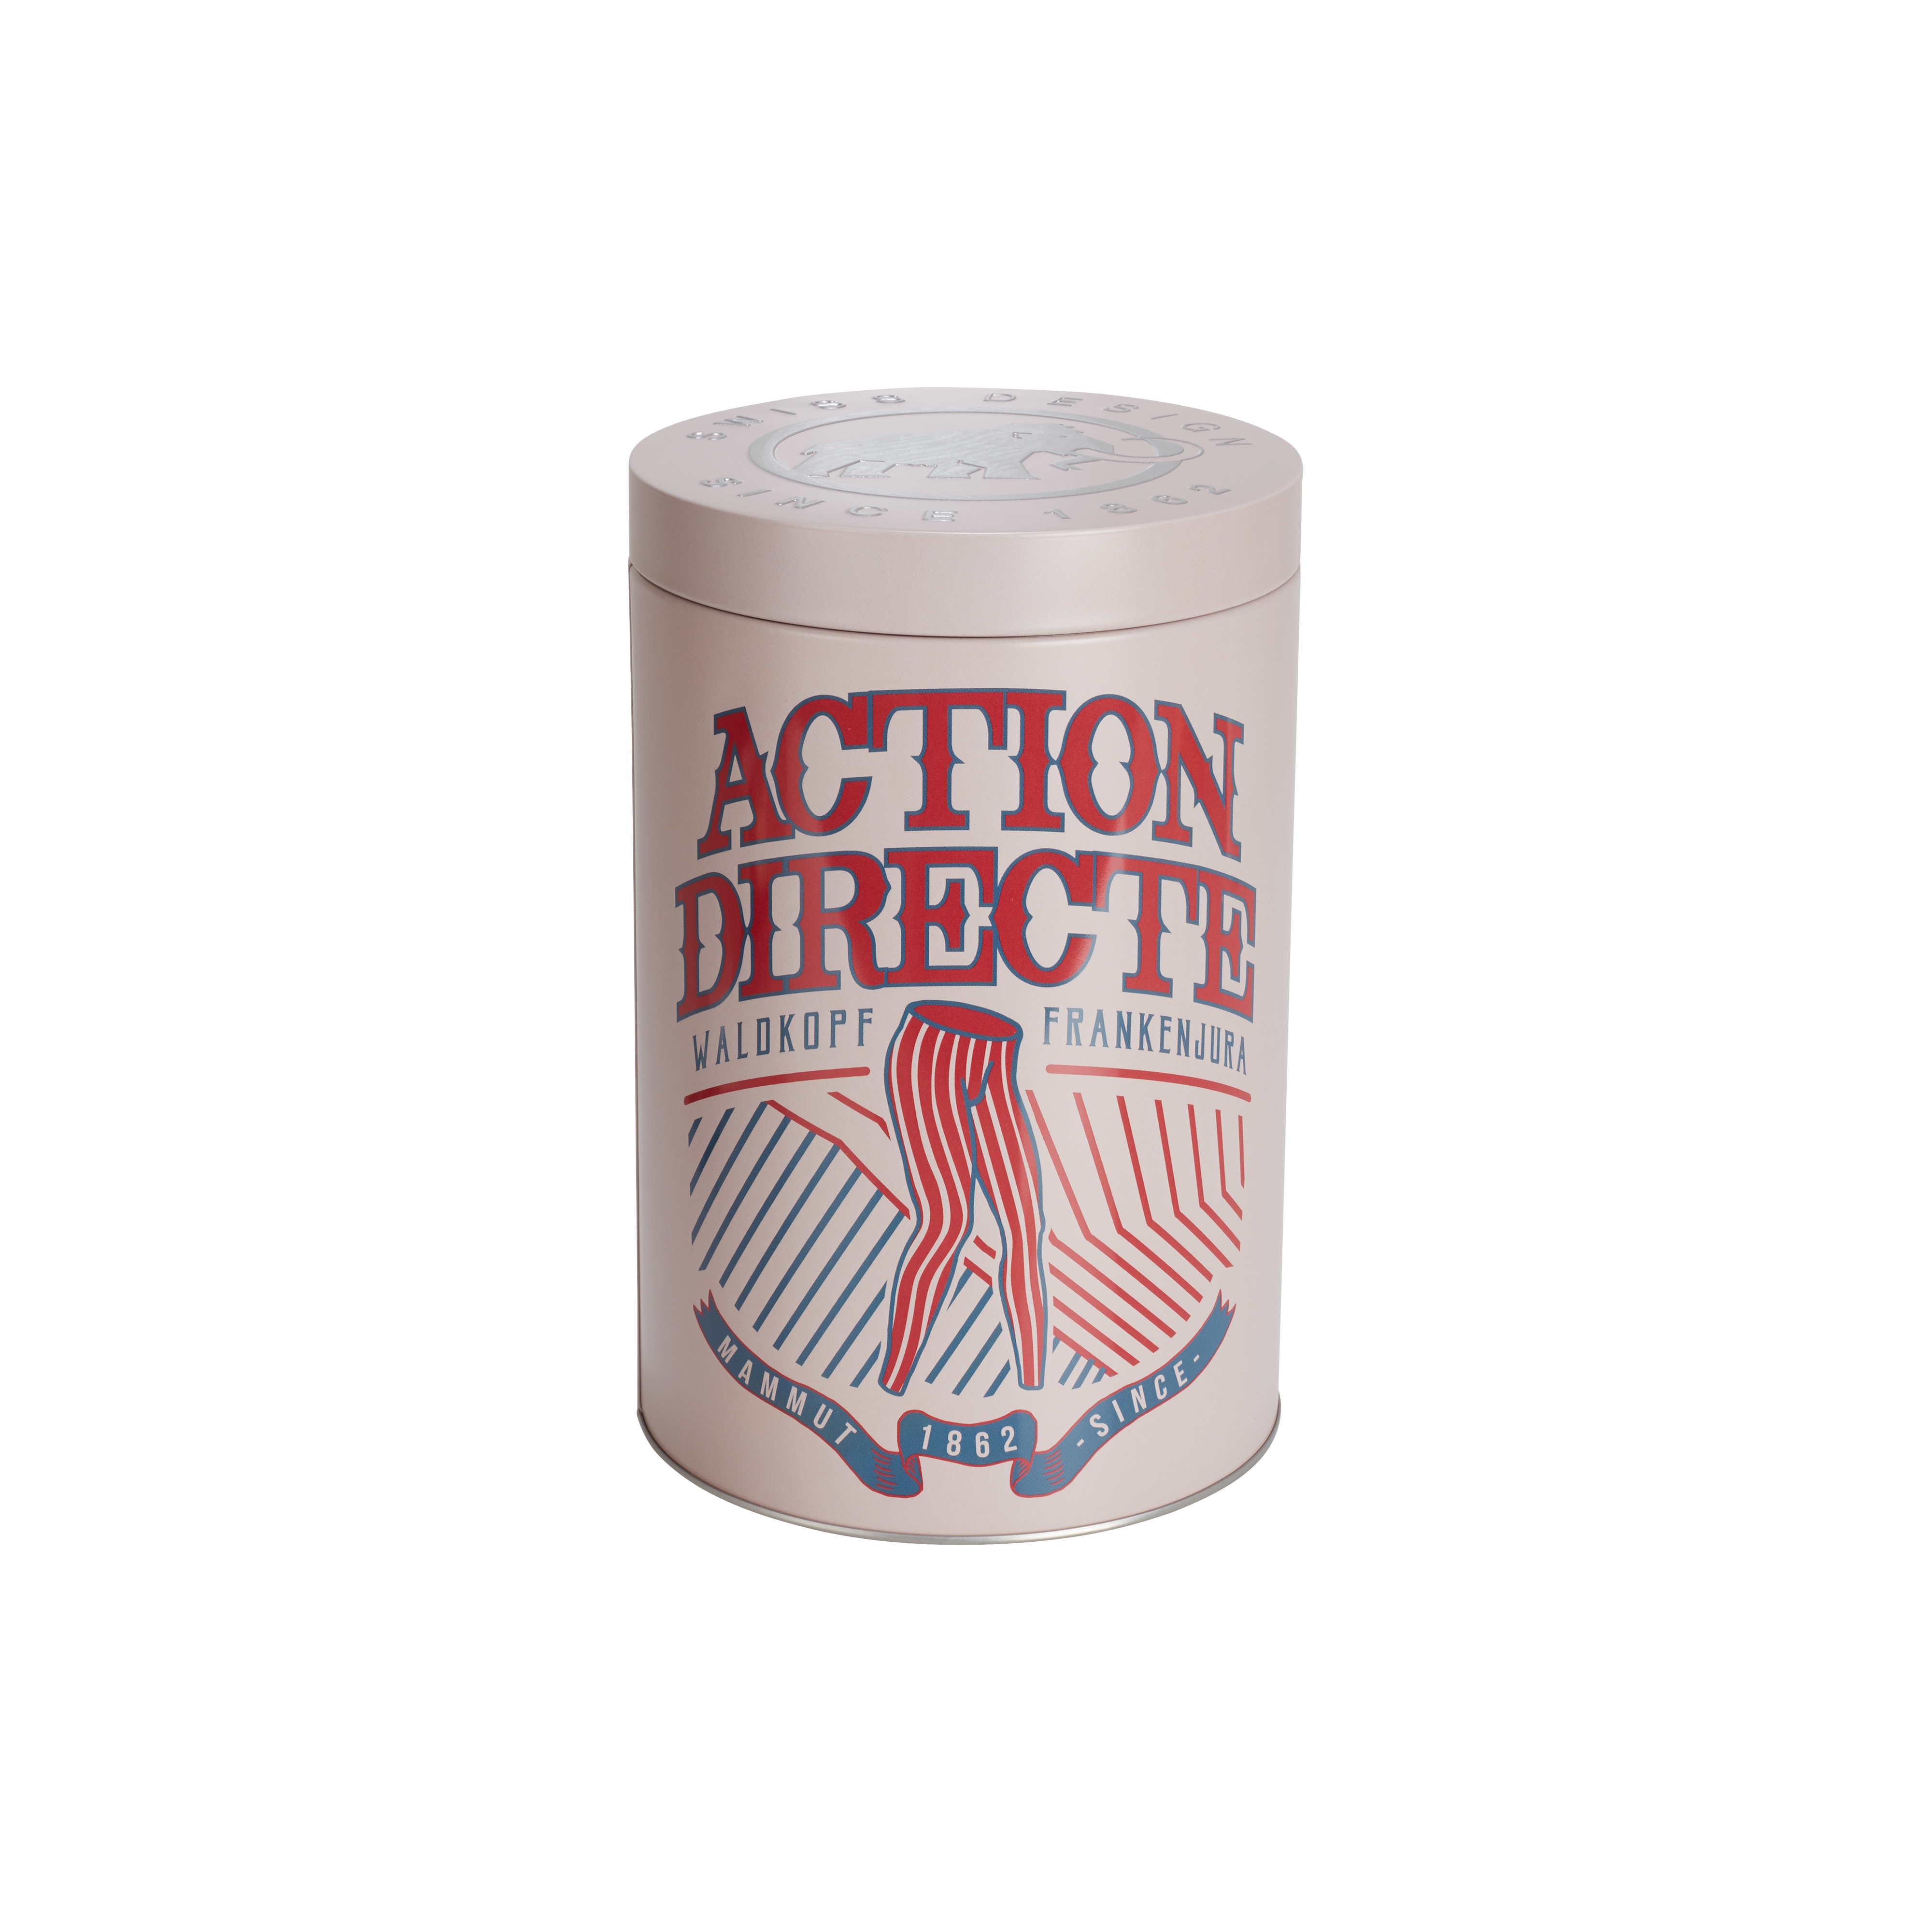 Pure Chalk Collectors Box - action directe, one size thumbnail